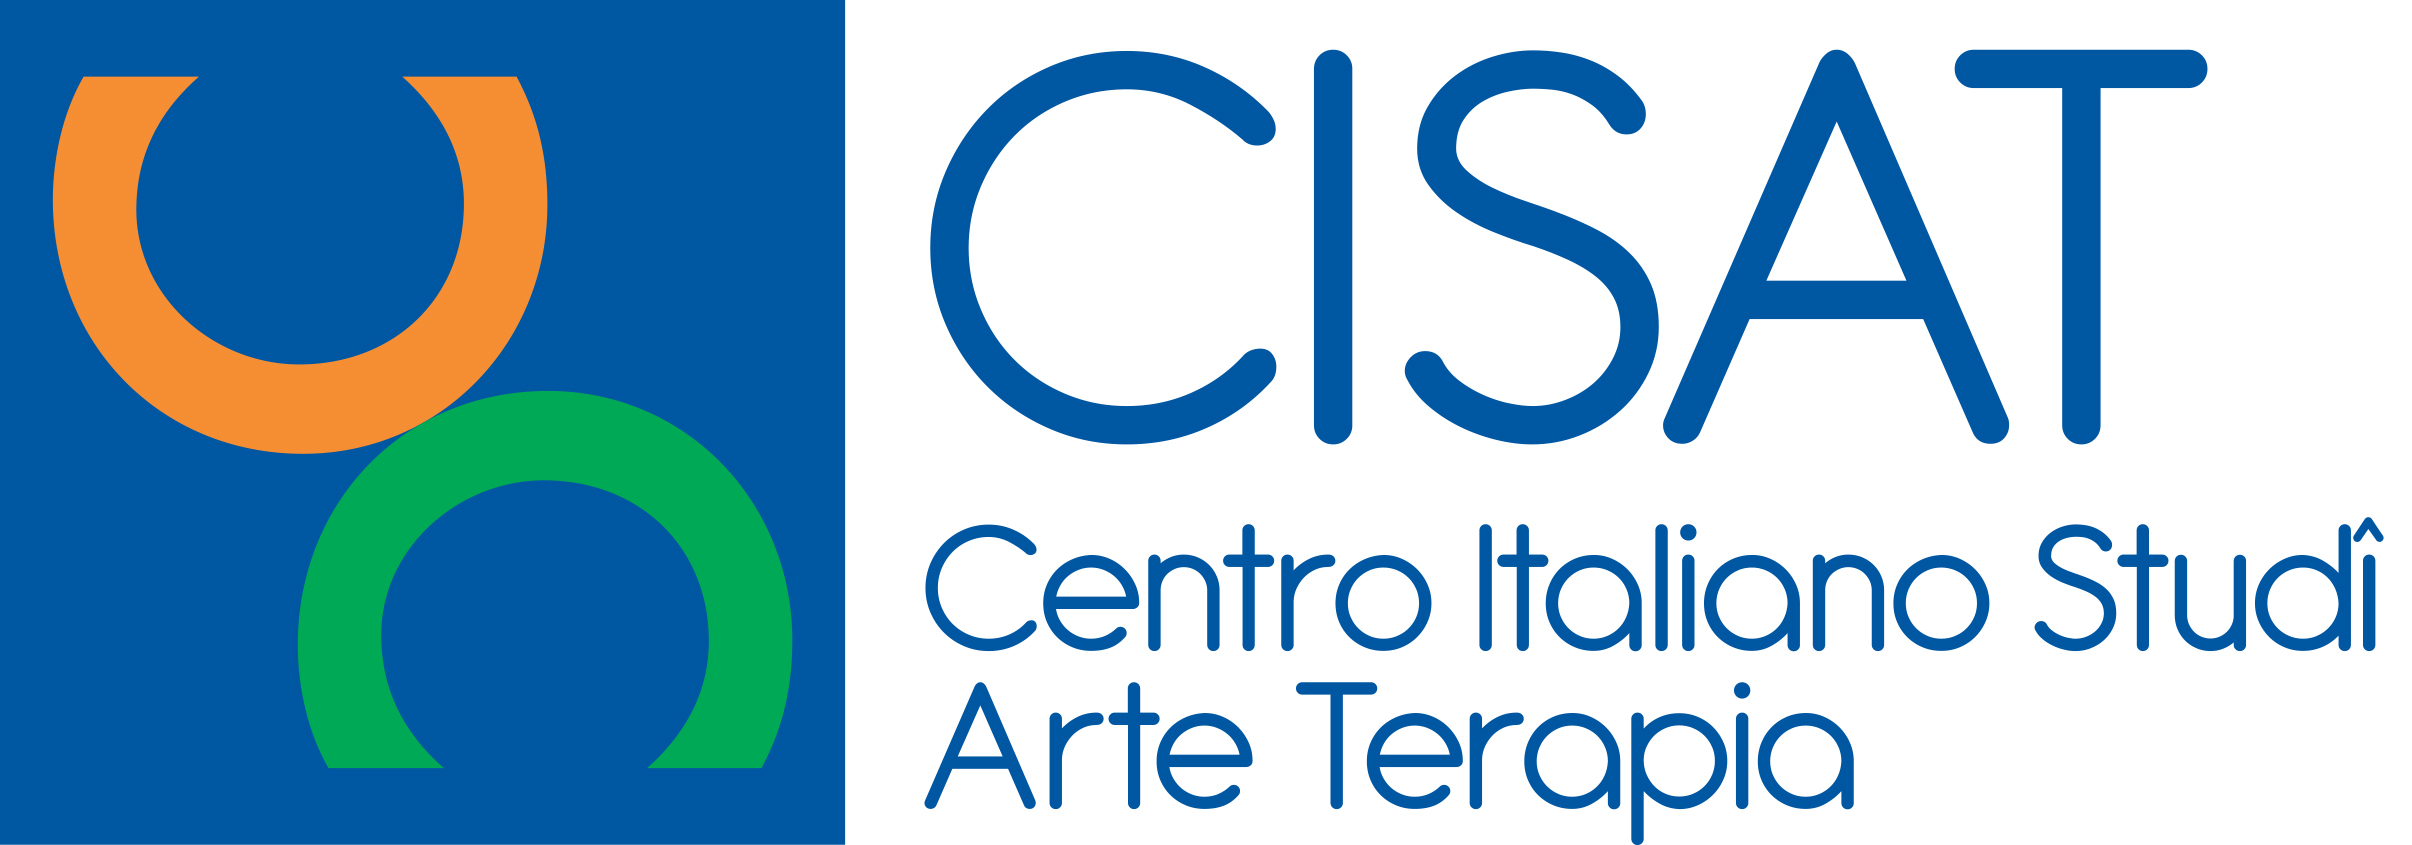 CISAT Centro Italiano Studi Arte-Terapia